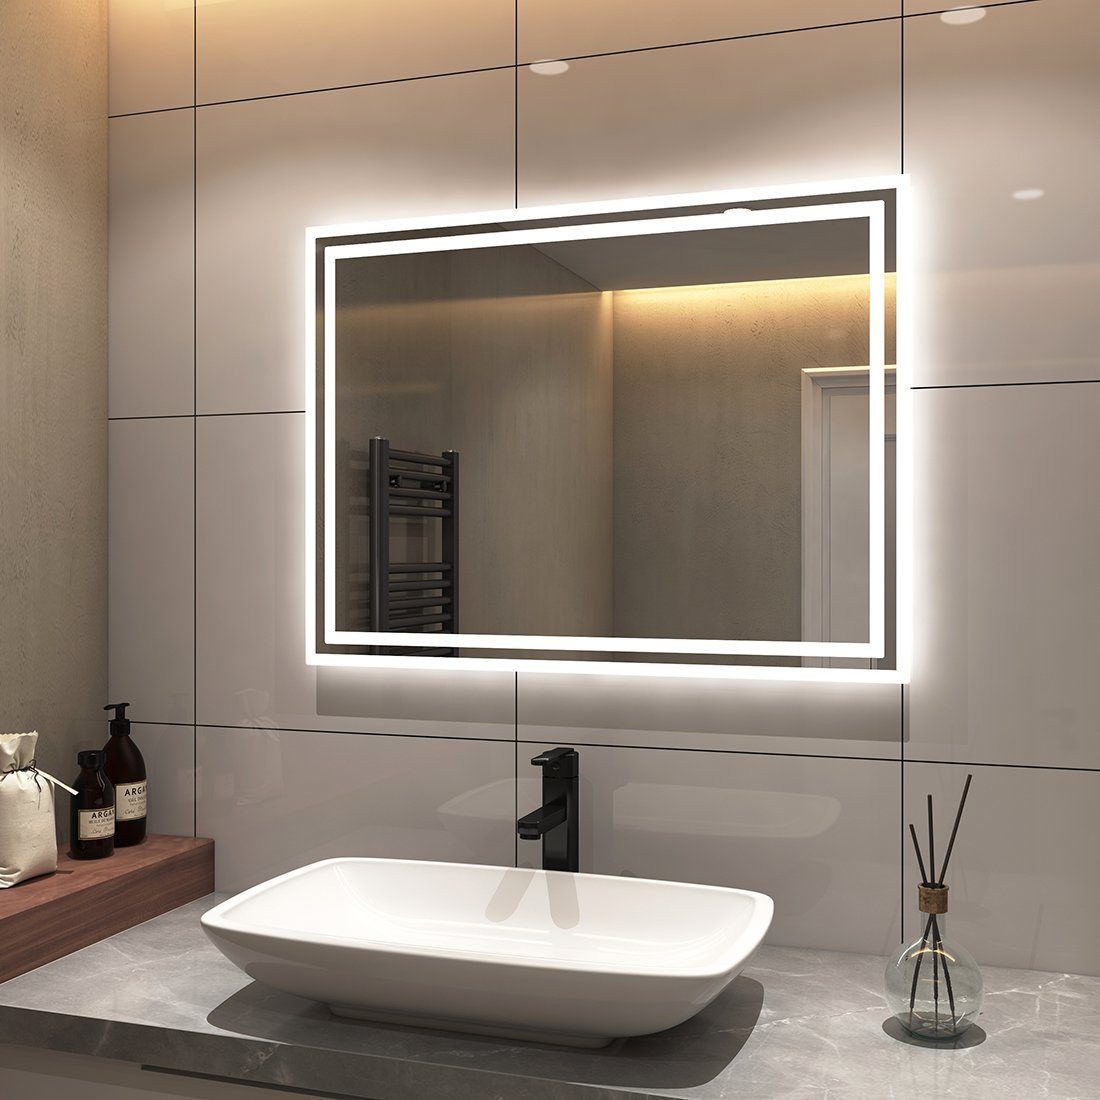 S'AFIELINA Badspiegel Badspiegel mit Beleuchtung, LED Badspiegel mit Druckknopfschalter, Beschlagfrei,2 Lichtfarben,Energiesparend, Wandmontage, IP44 | Badspiegel